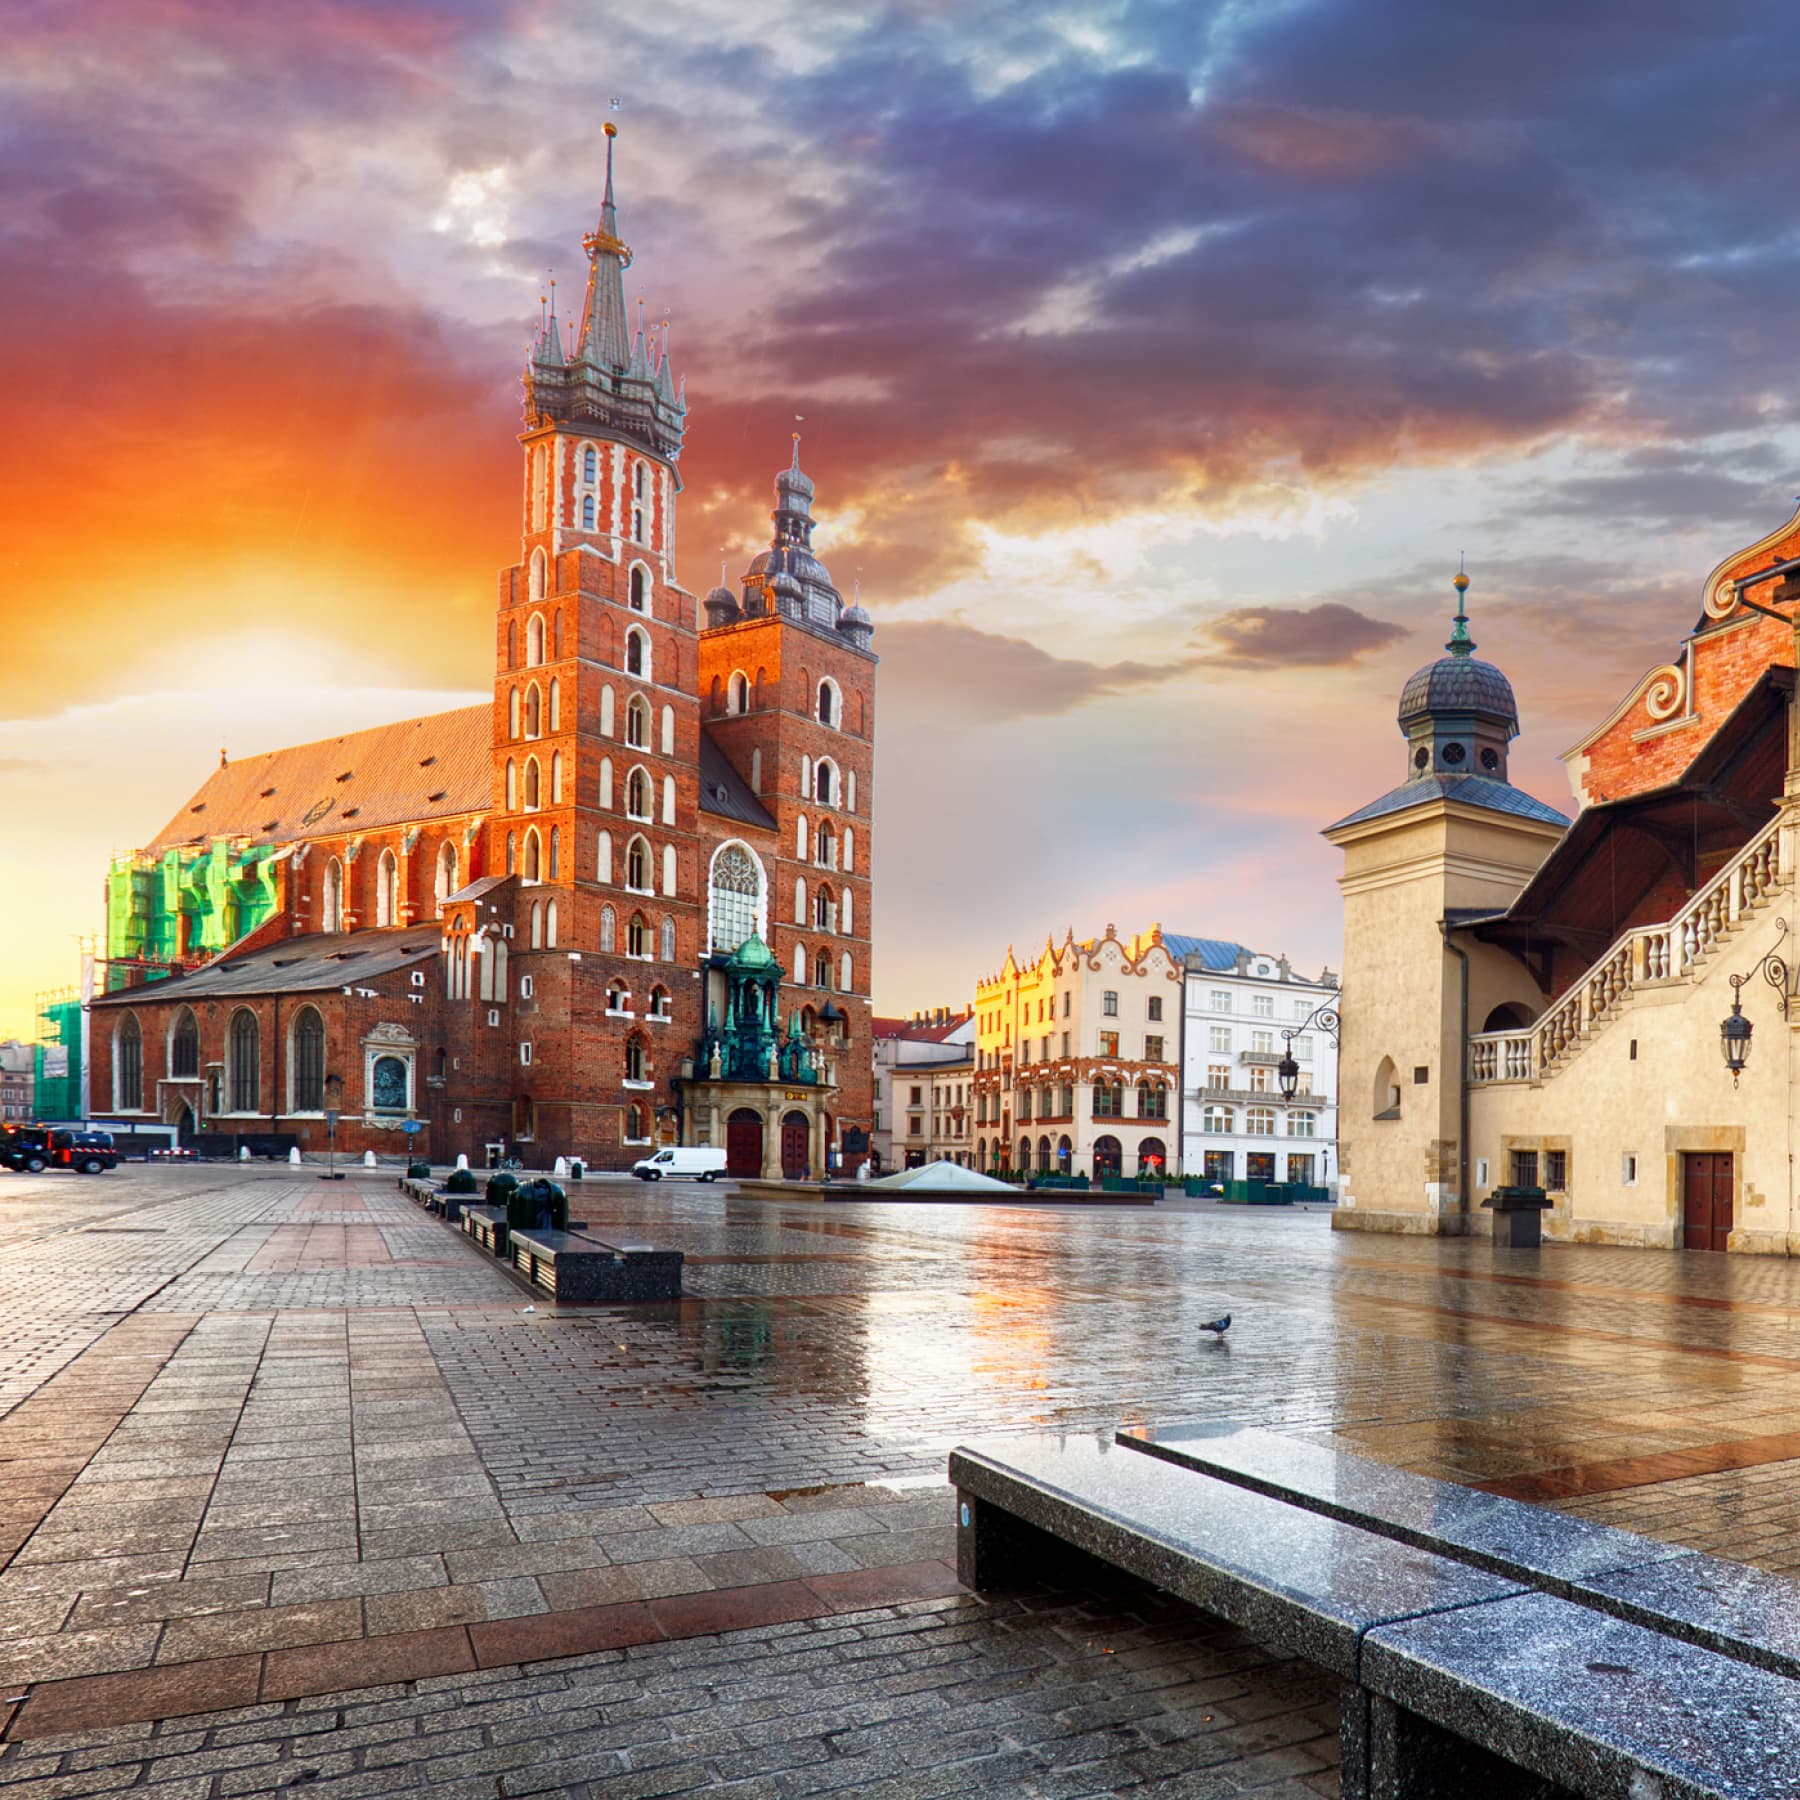 Krakow is a superb destination for romantic city breaks